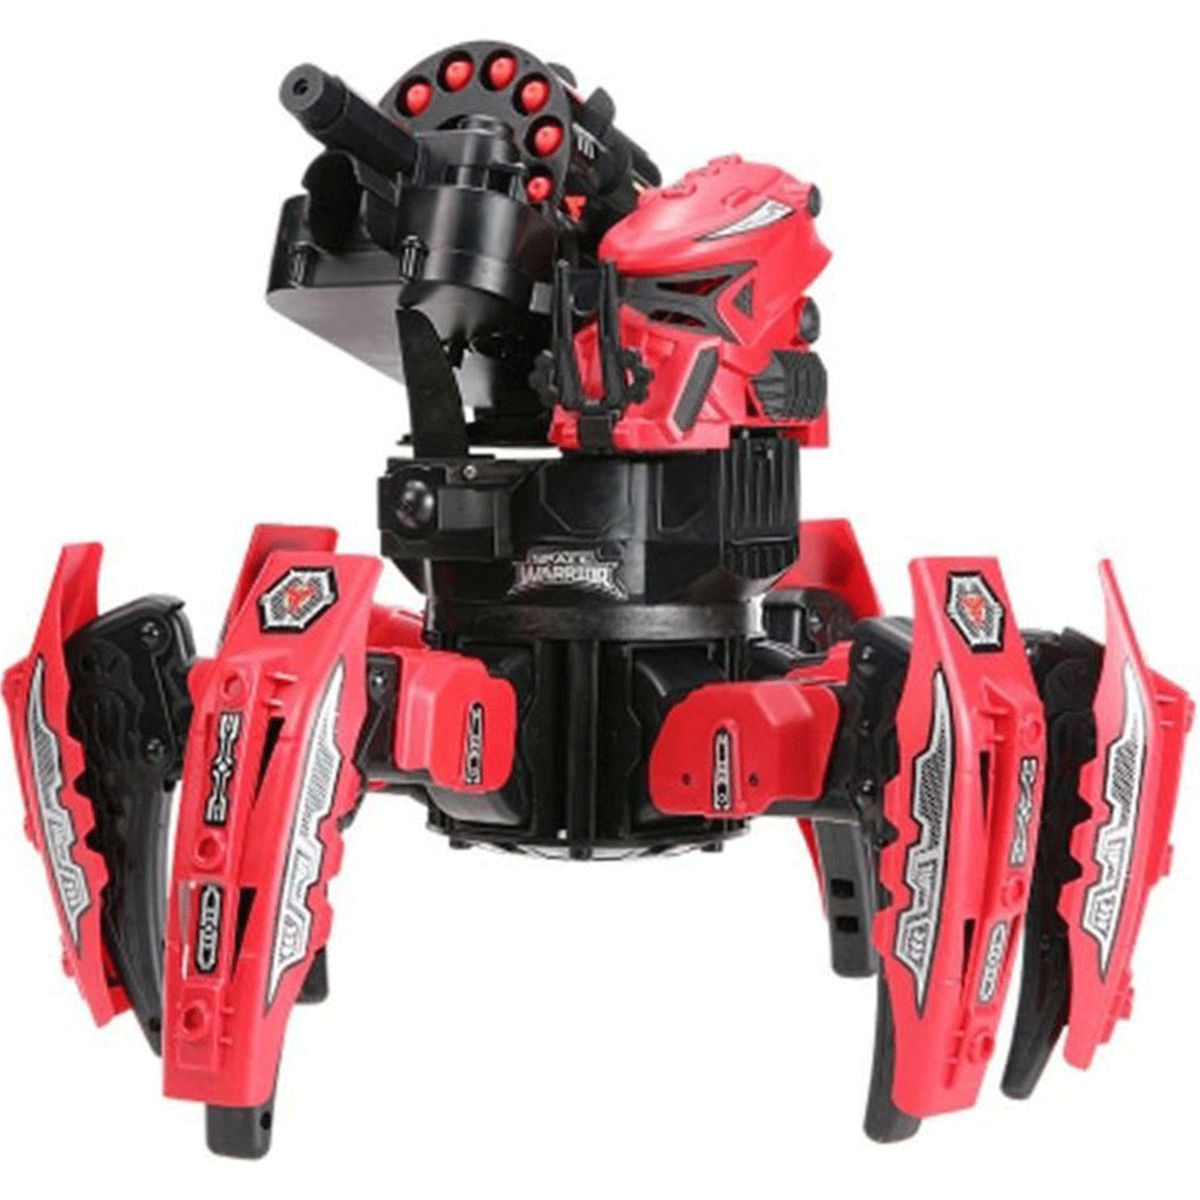 ربات کنترلی هشت پا با قابلیت پرتاب تیر آیتم 9008.1 space warrior robot